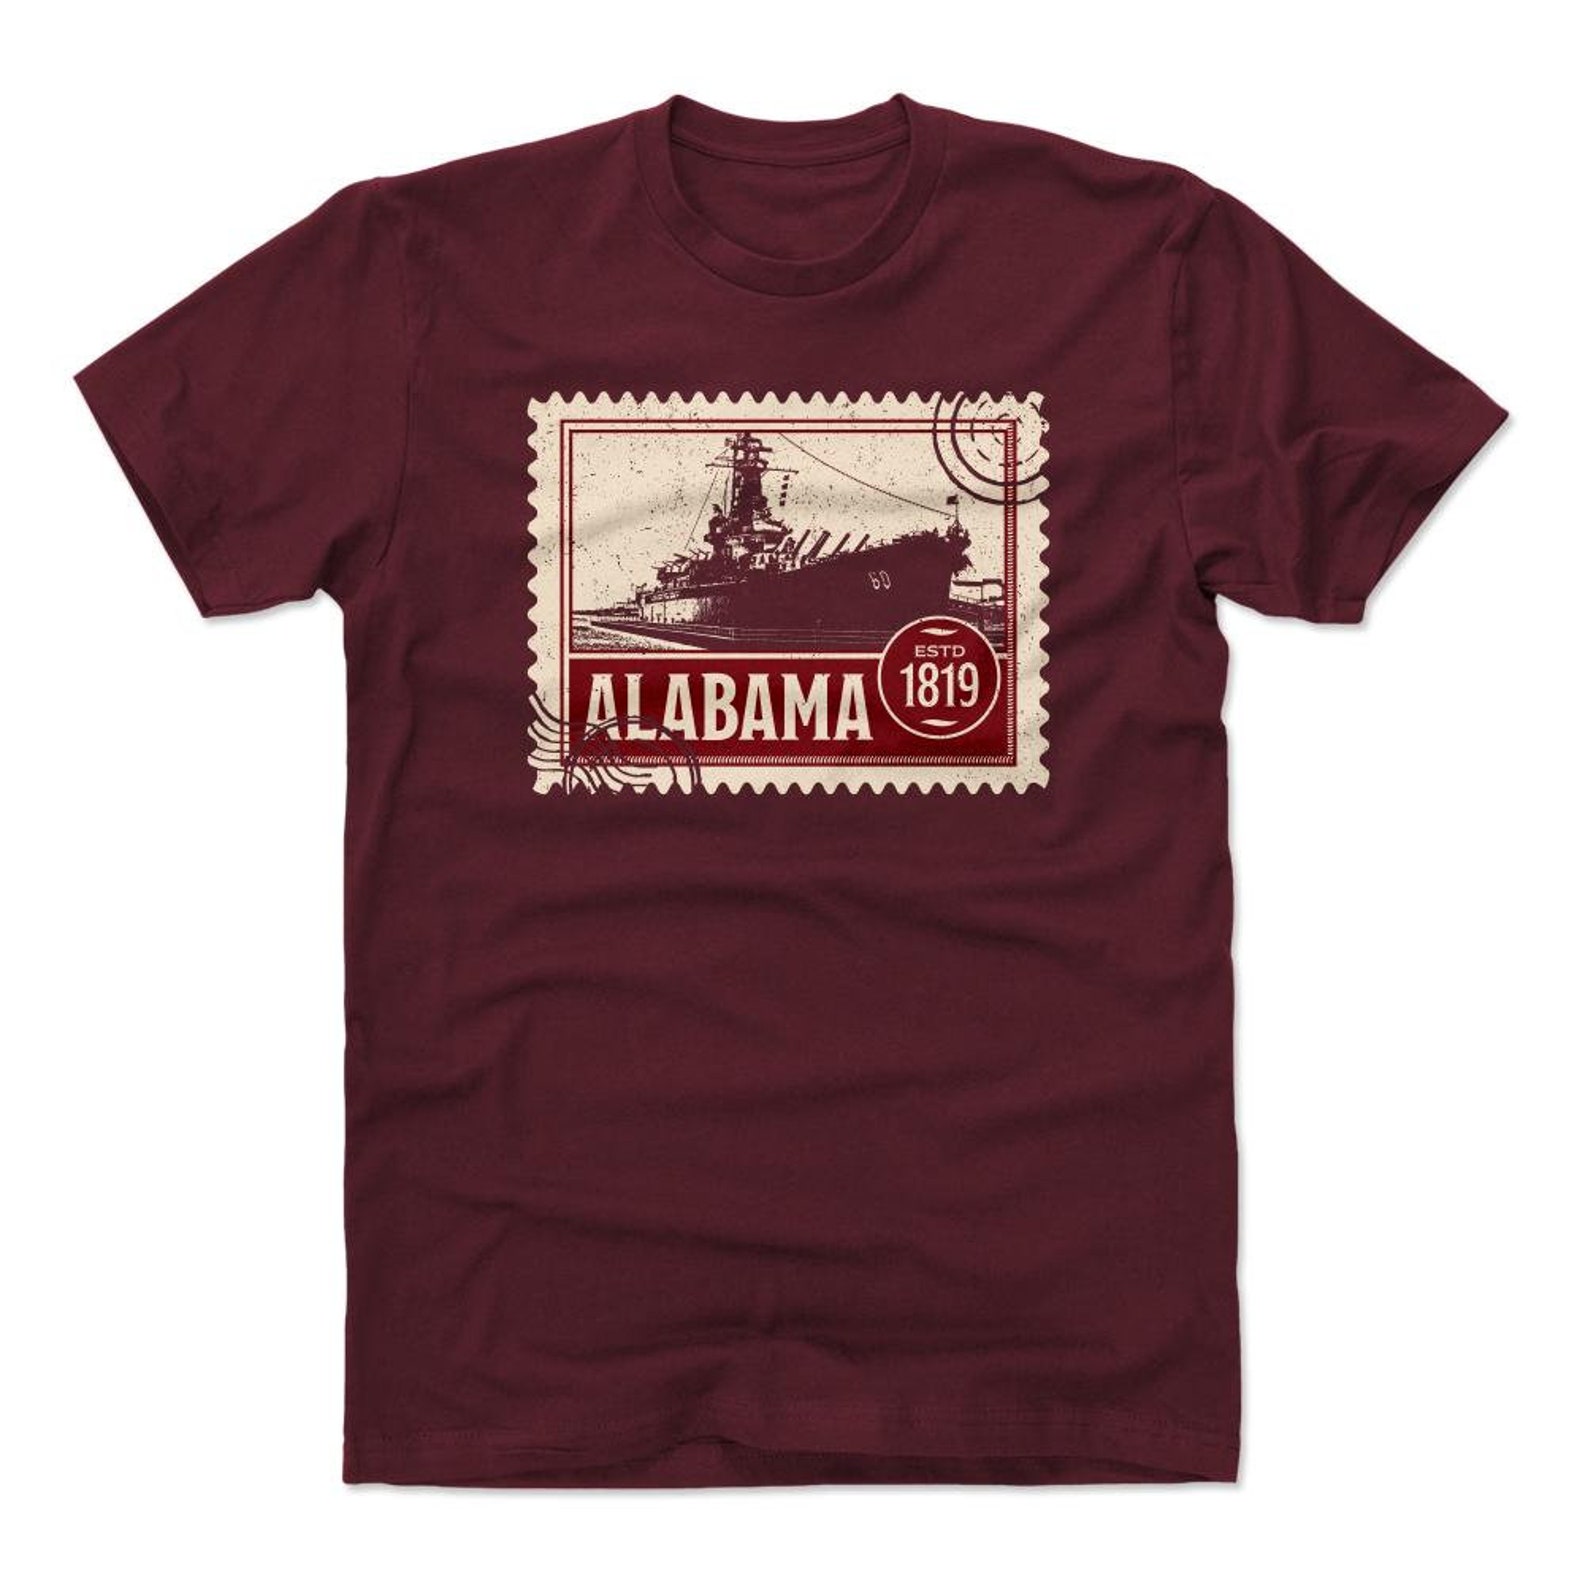 Alabama Men's Cotton T-Shirt Alabama Lifestyle Alabama | Etsy